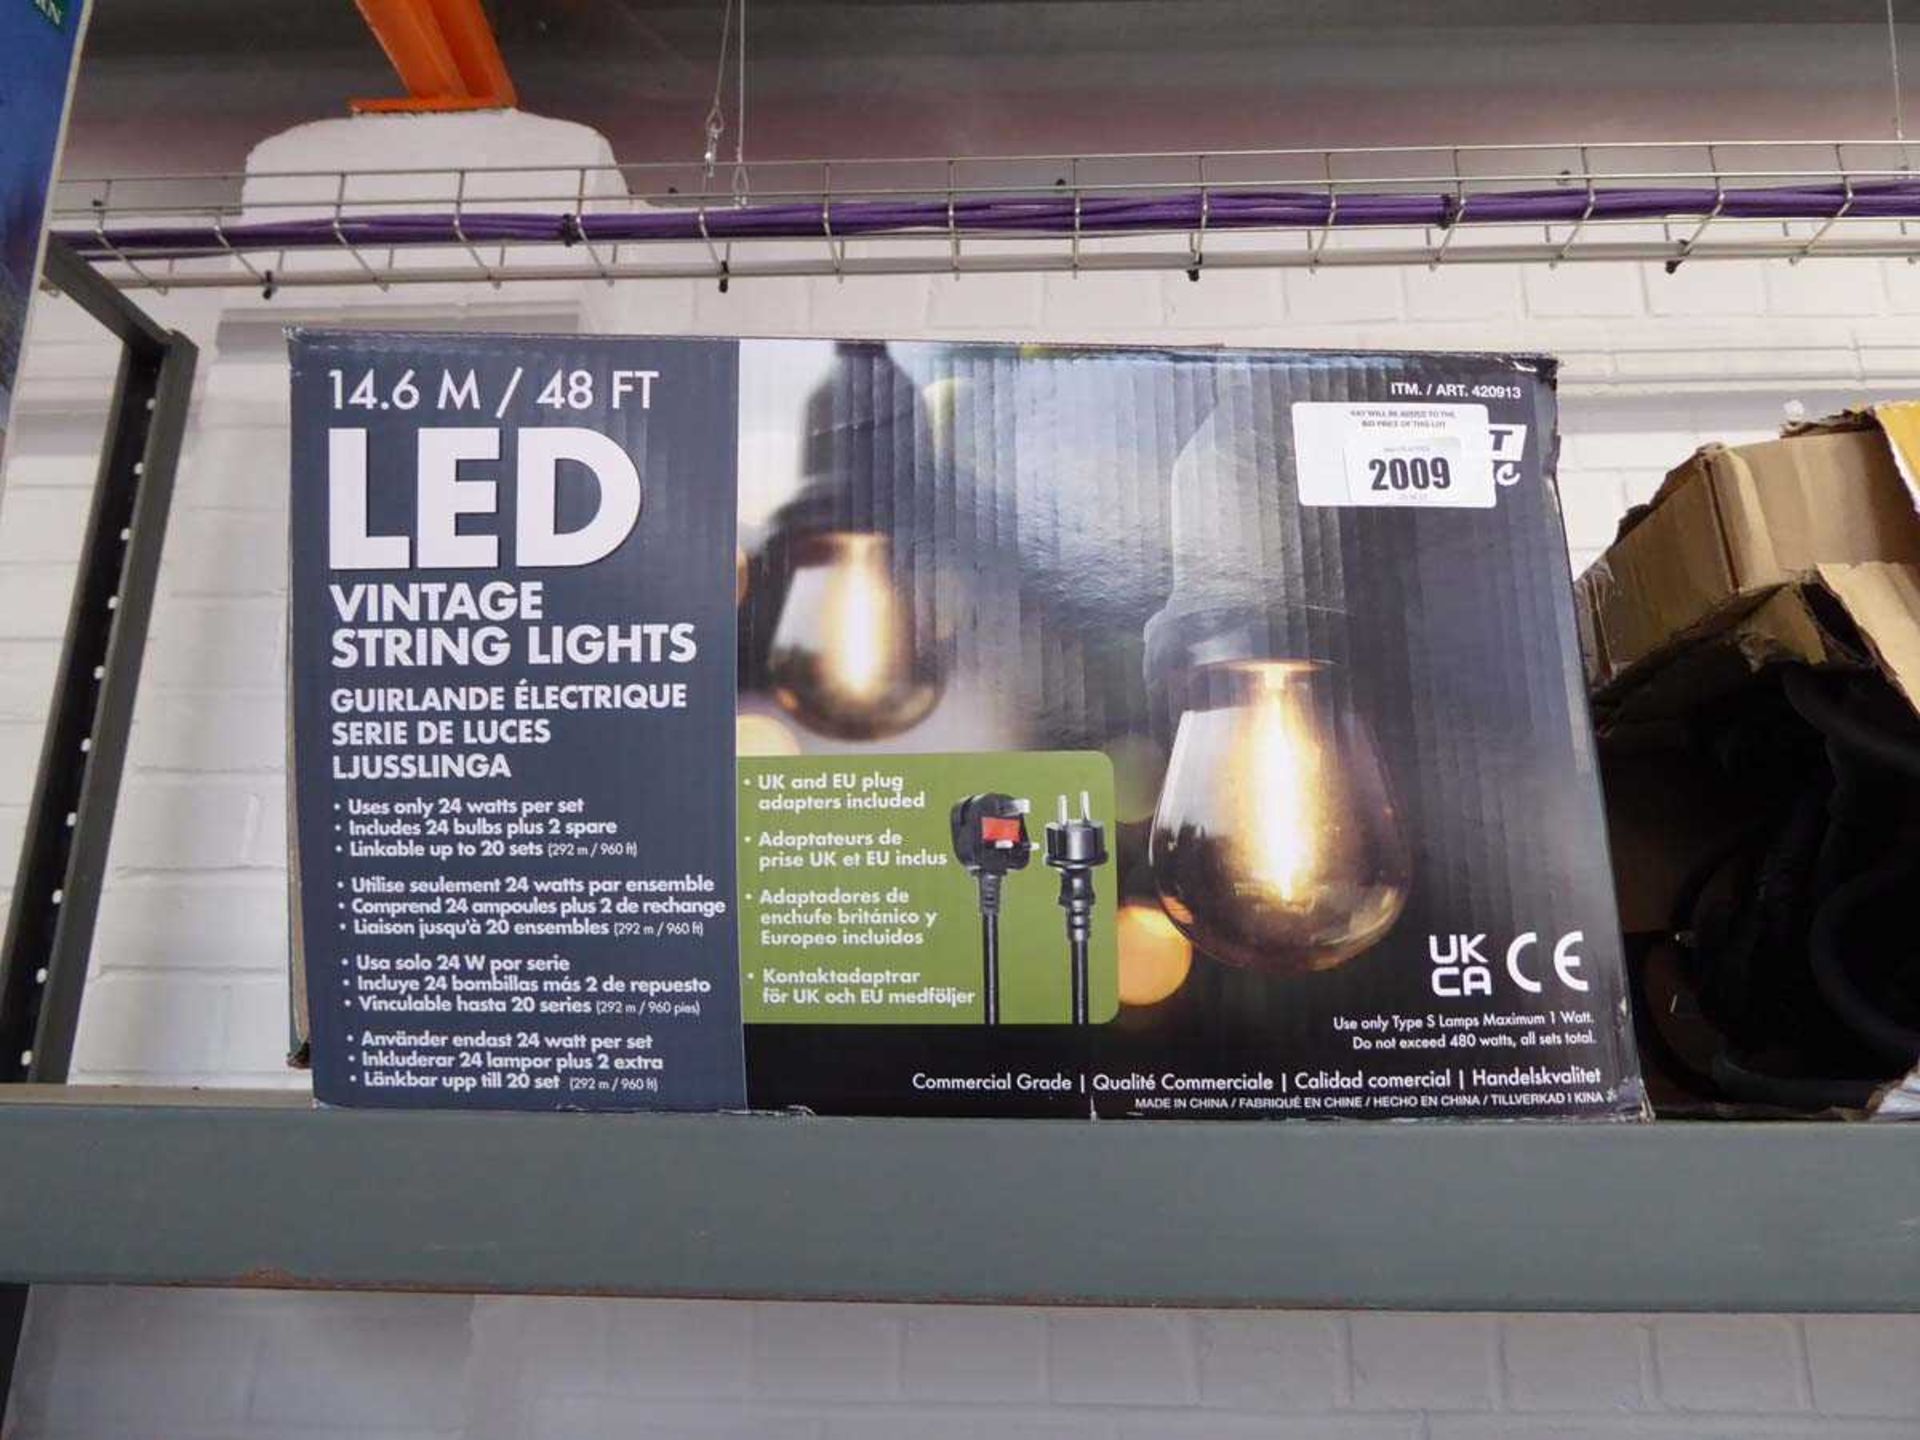 LED vintage string lights, boxed